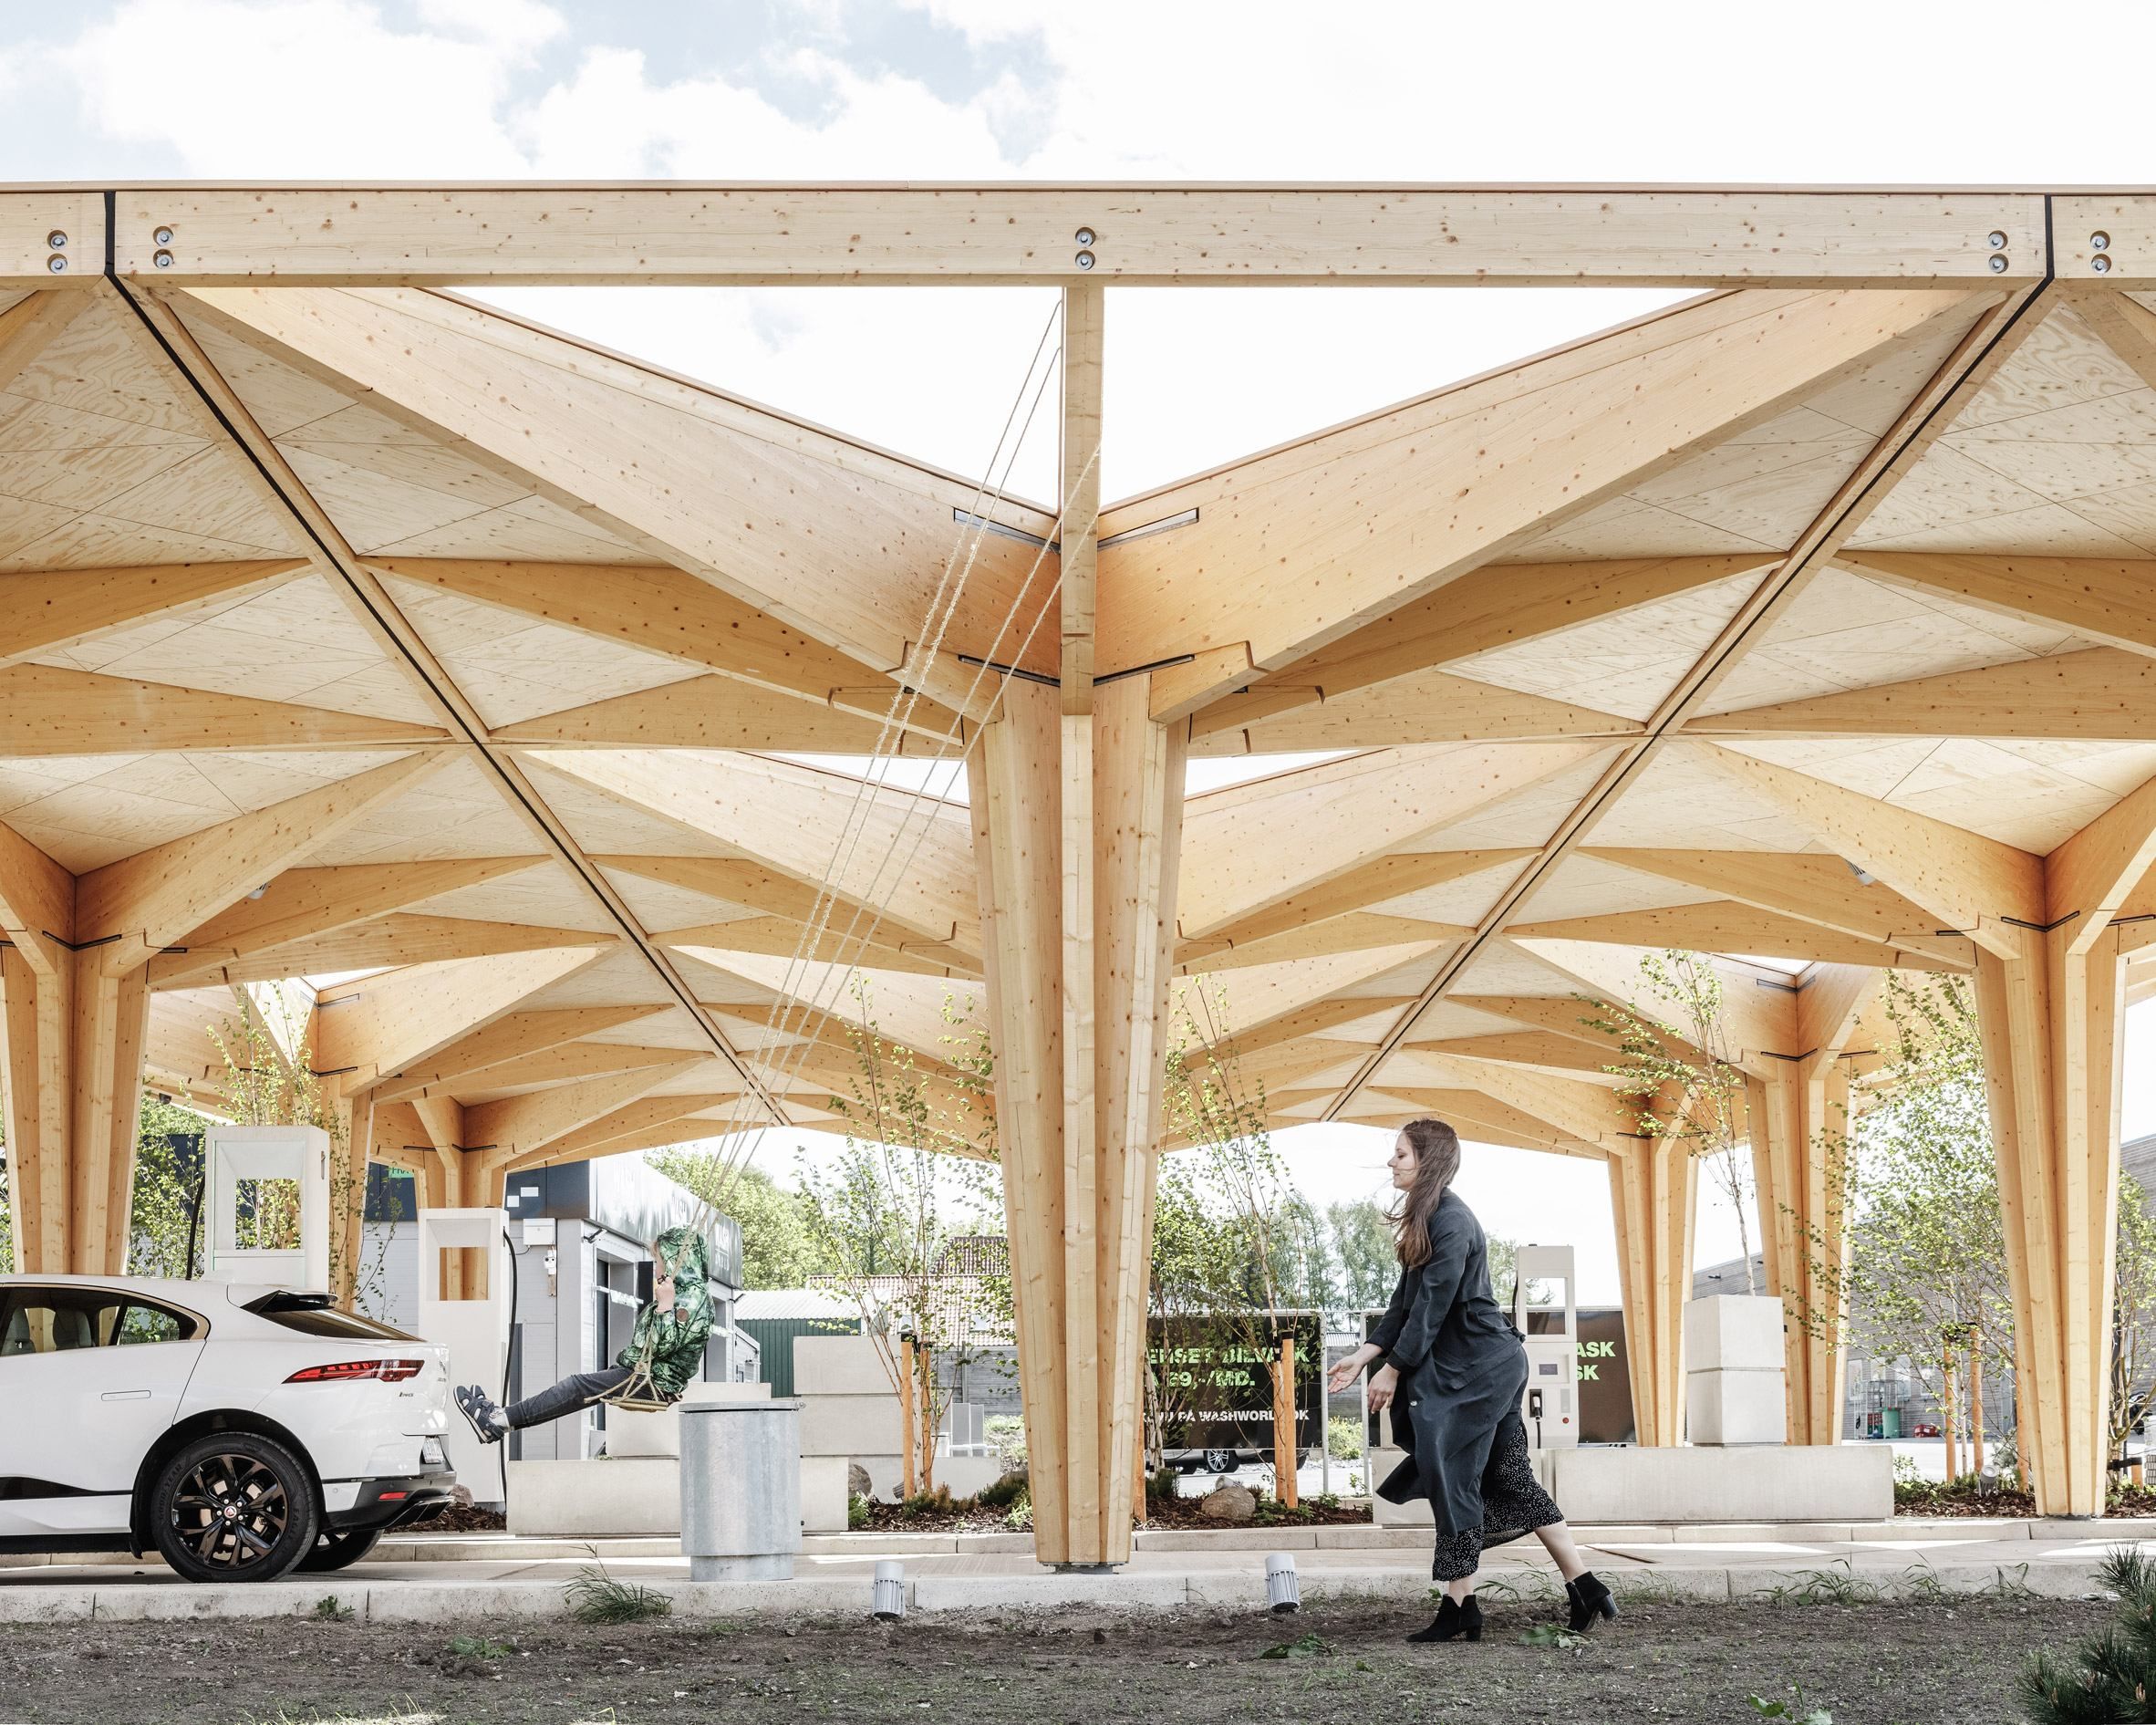 Будущее рядом: в Дании презентовали деревянные зарядные станции для электромобилей – фото